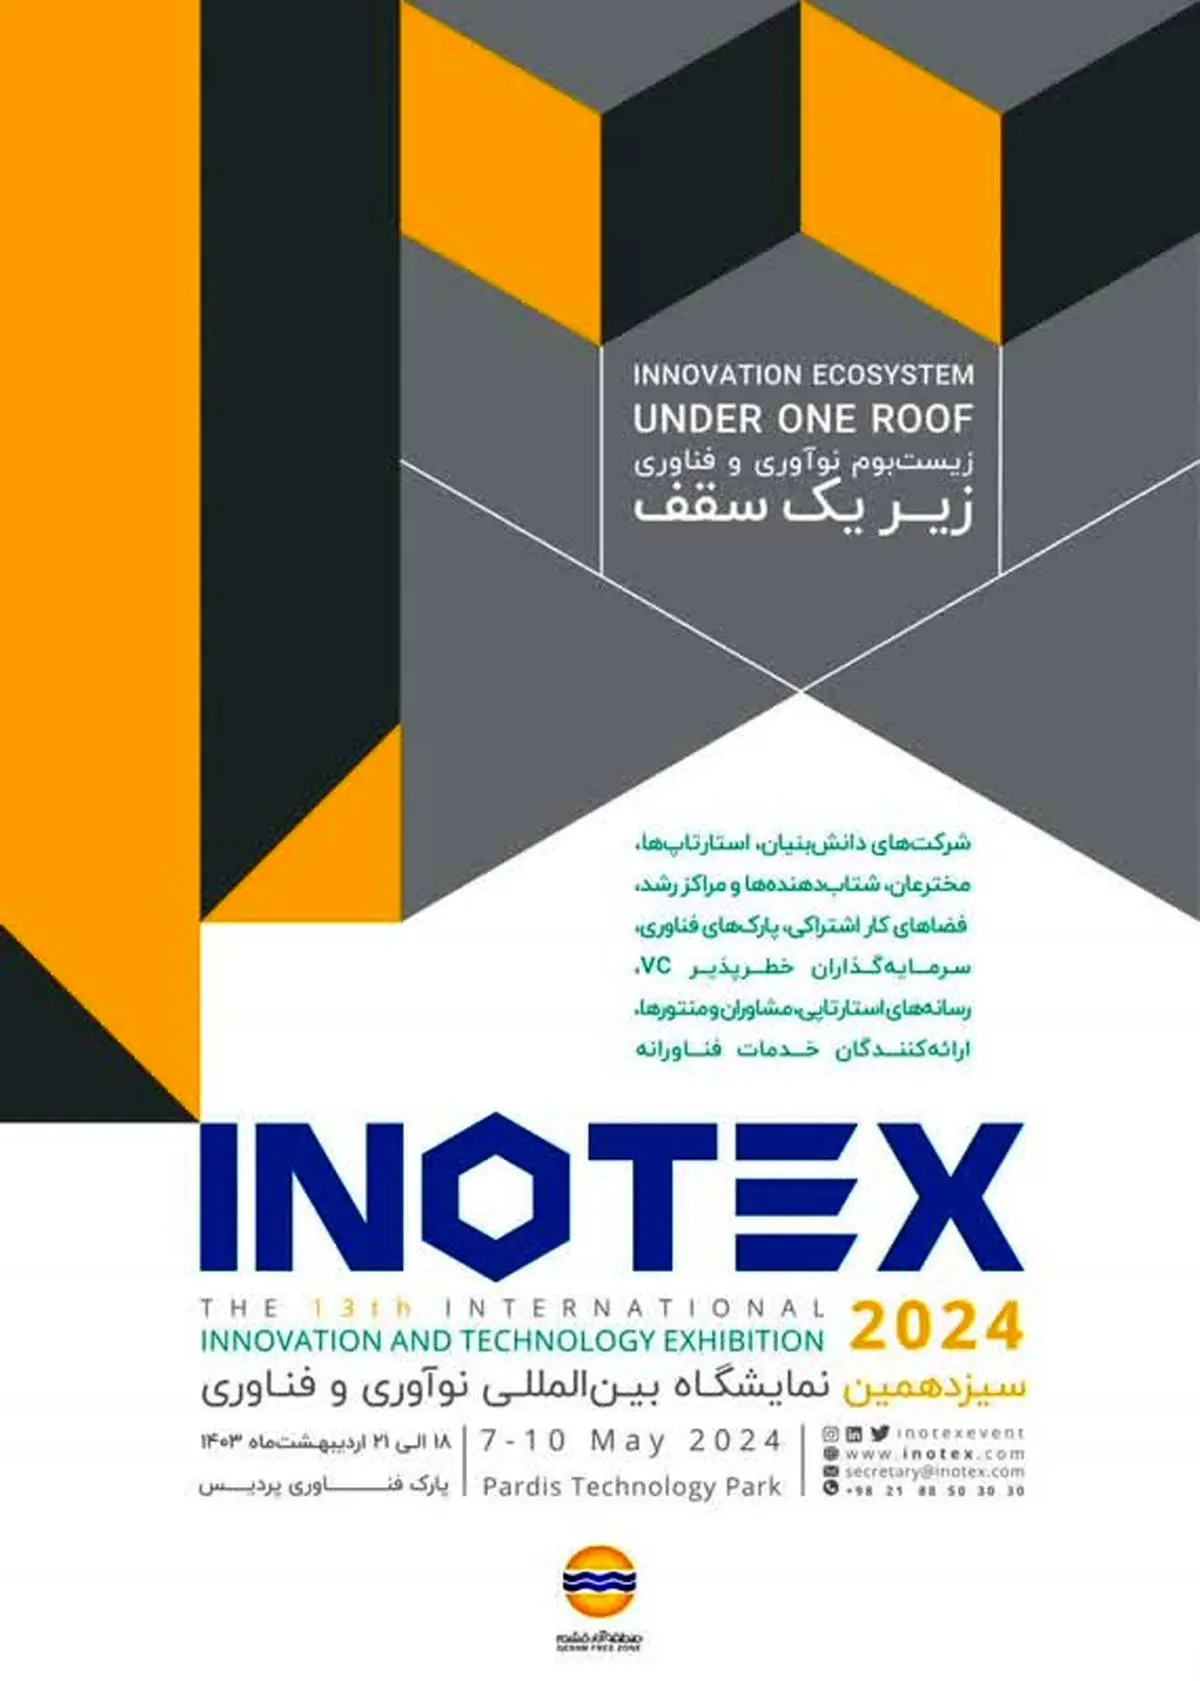  معرفی فرصت های تکنولوژی و هوشمندسازی قشم در نمایشگاه INOTEX ۲۰۲۴